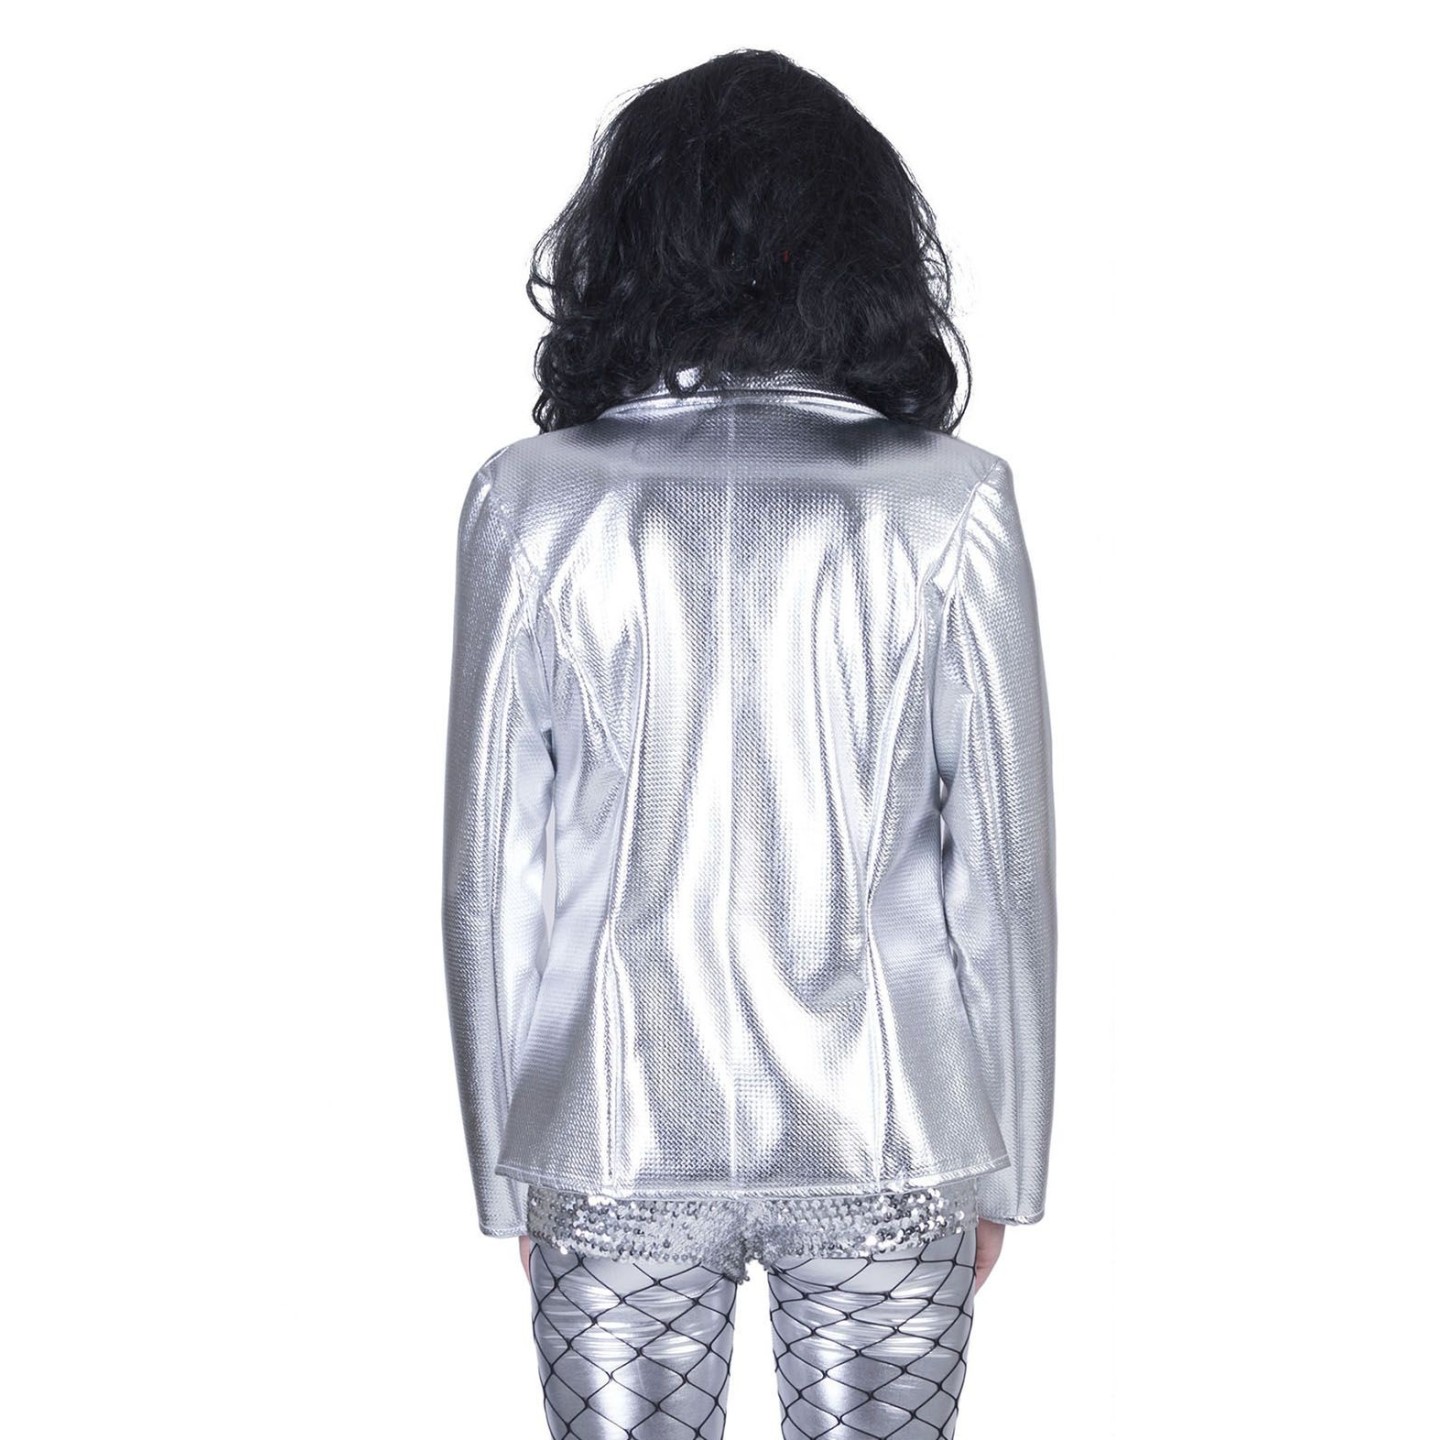 tempo Plicht zwaartekracht Disco jasje dames zilver | Jokershop.be - Disco kleding